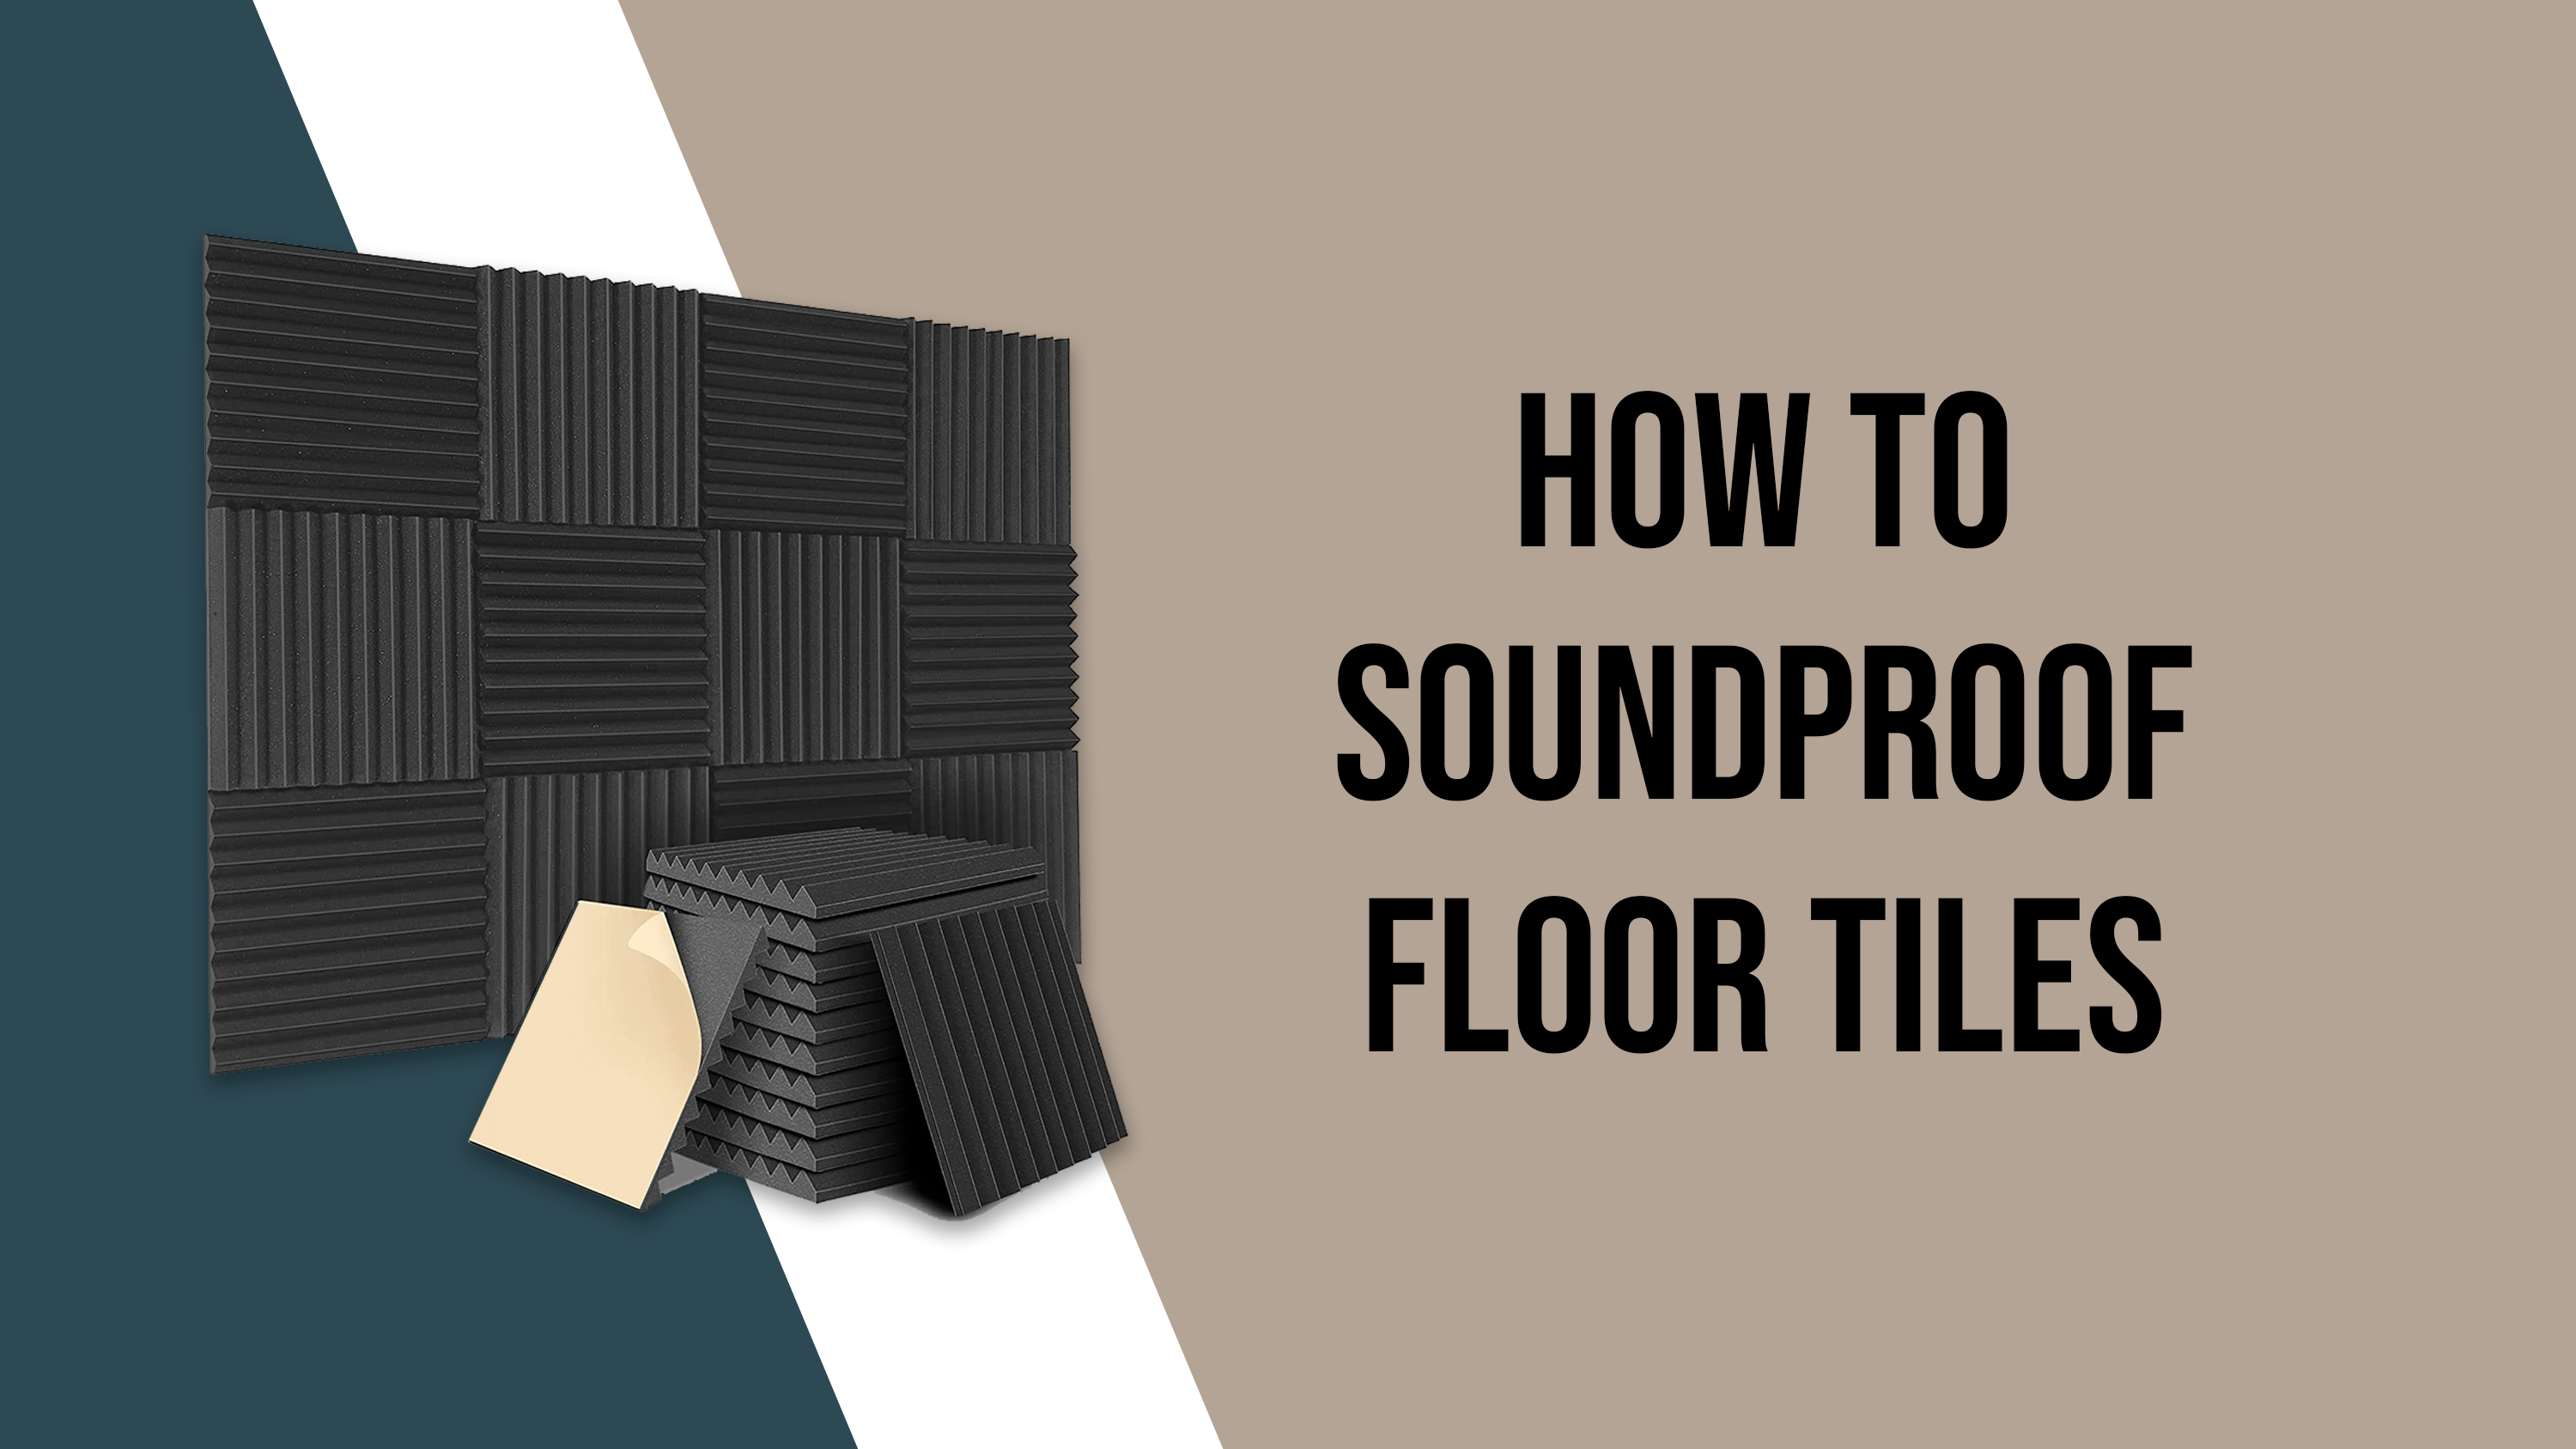 How to soundproof floor tiles